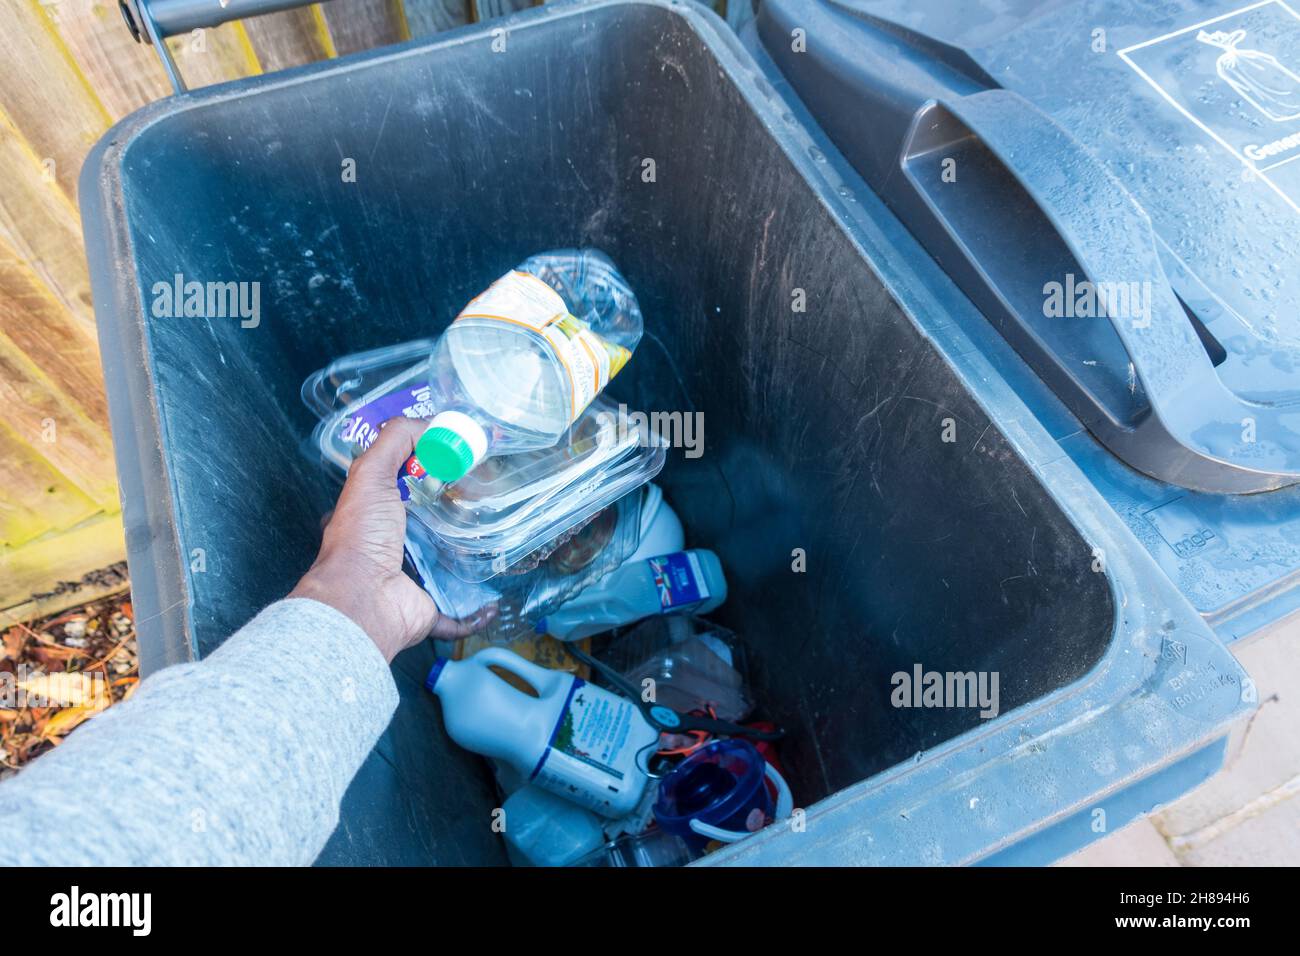 Un homme adulte dépose les articles en plastique dans un grand bac gris pour le recyclage Banque D'Images